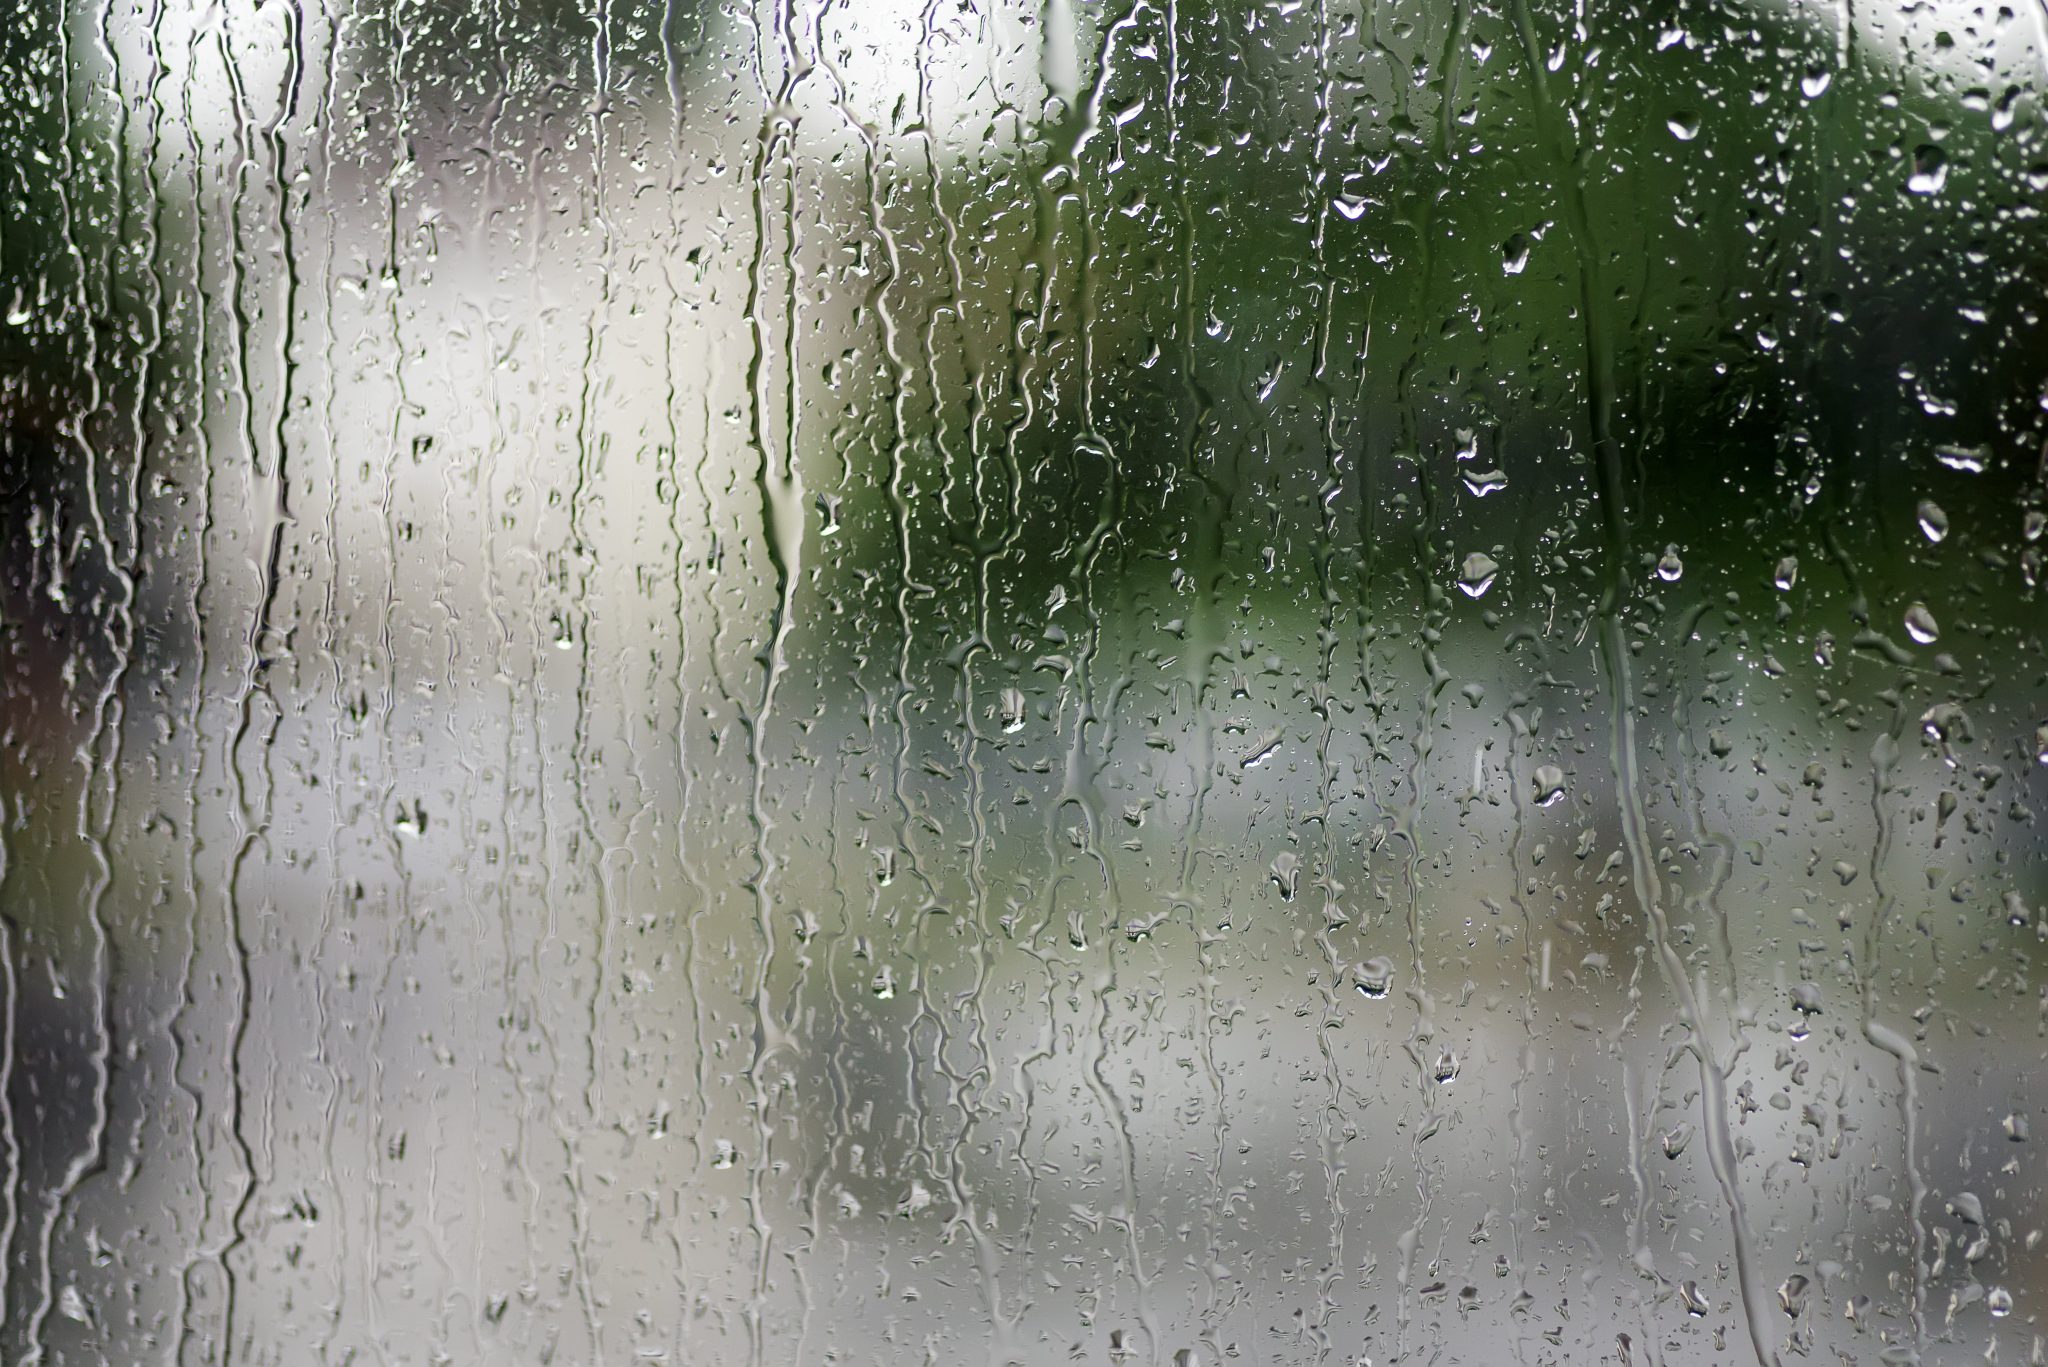 Rain effect. Капли на стекле. Стекло с эффектом дождя. Окно с каплями дождя. Капли дождя на окне.